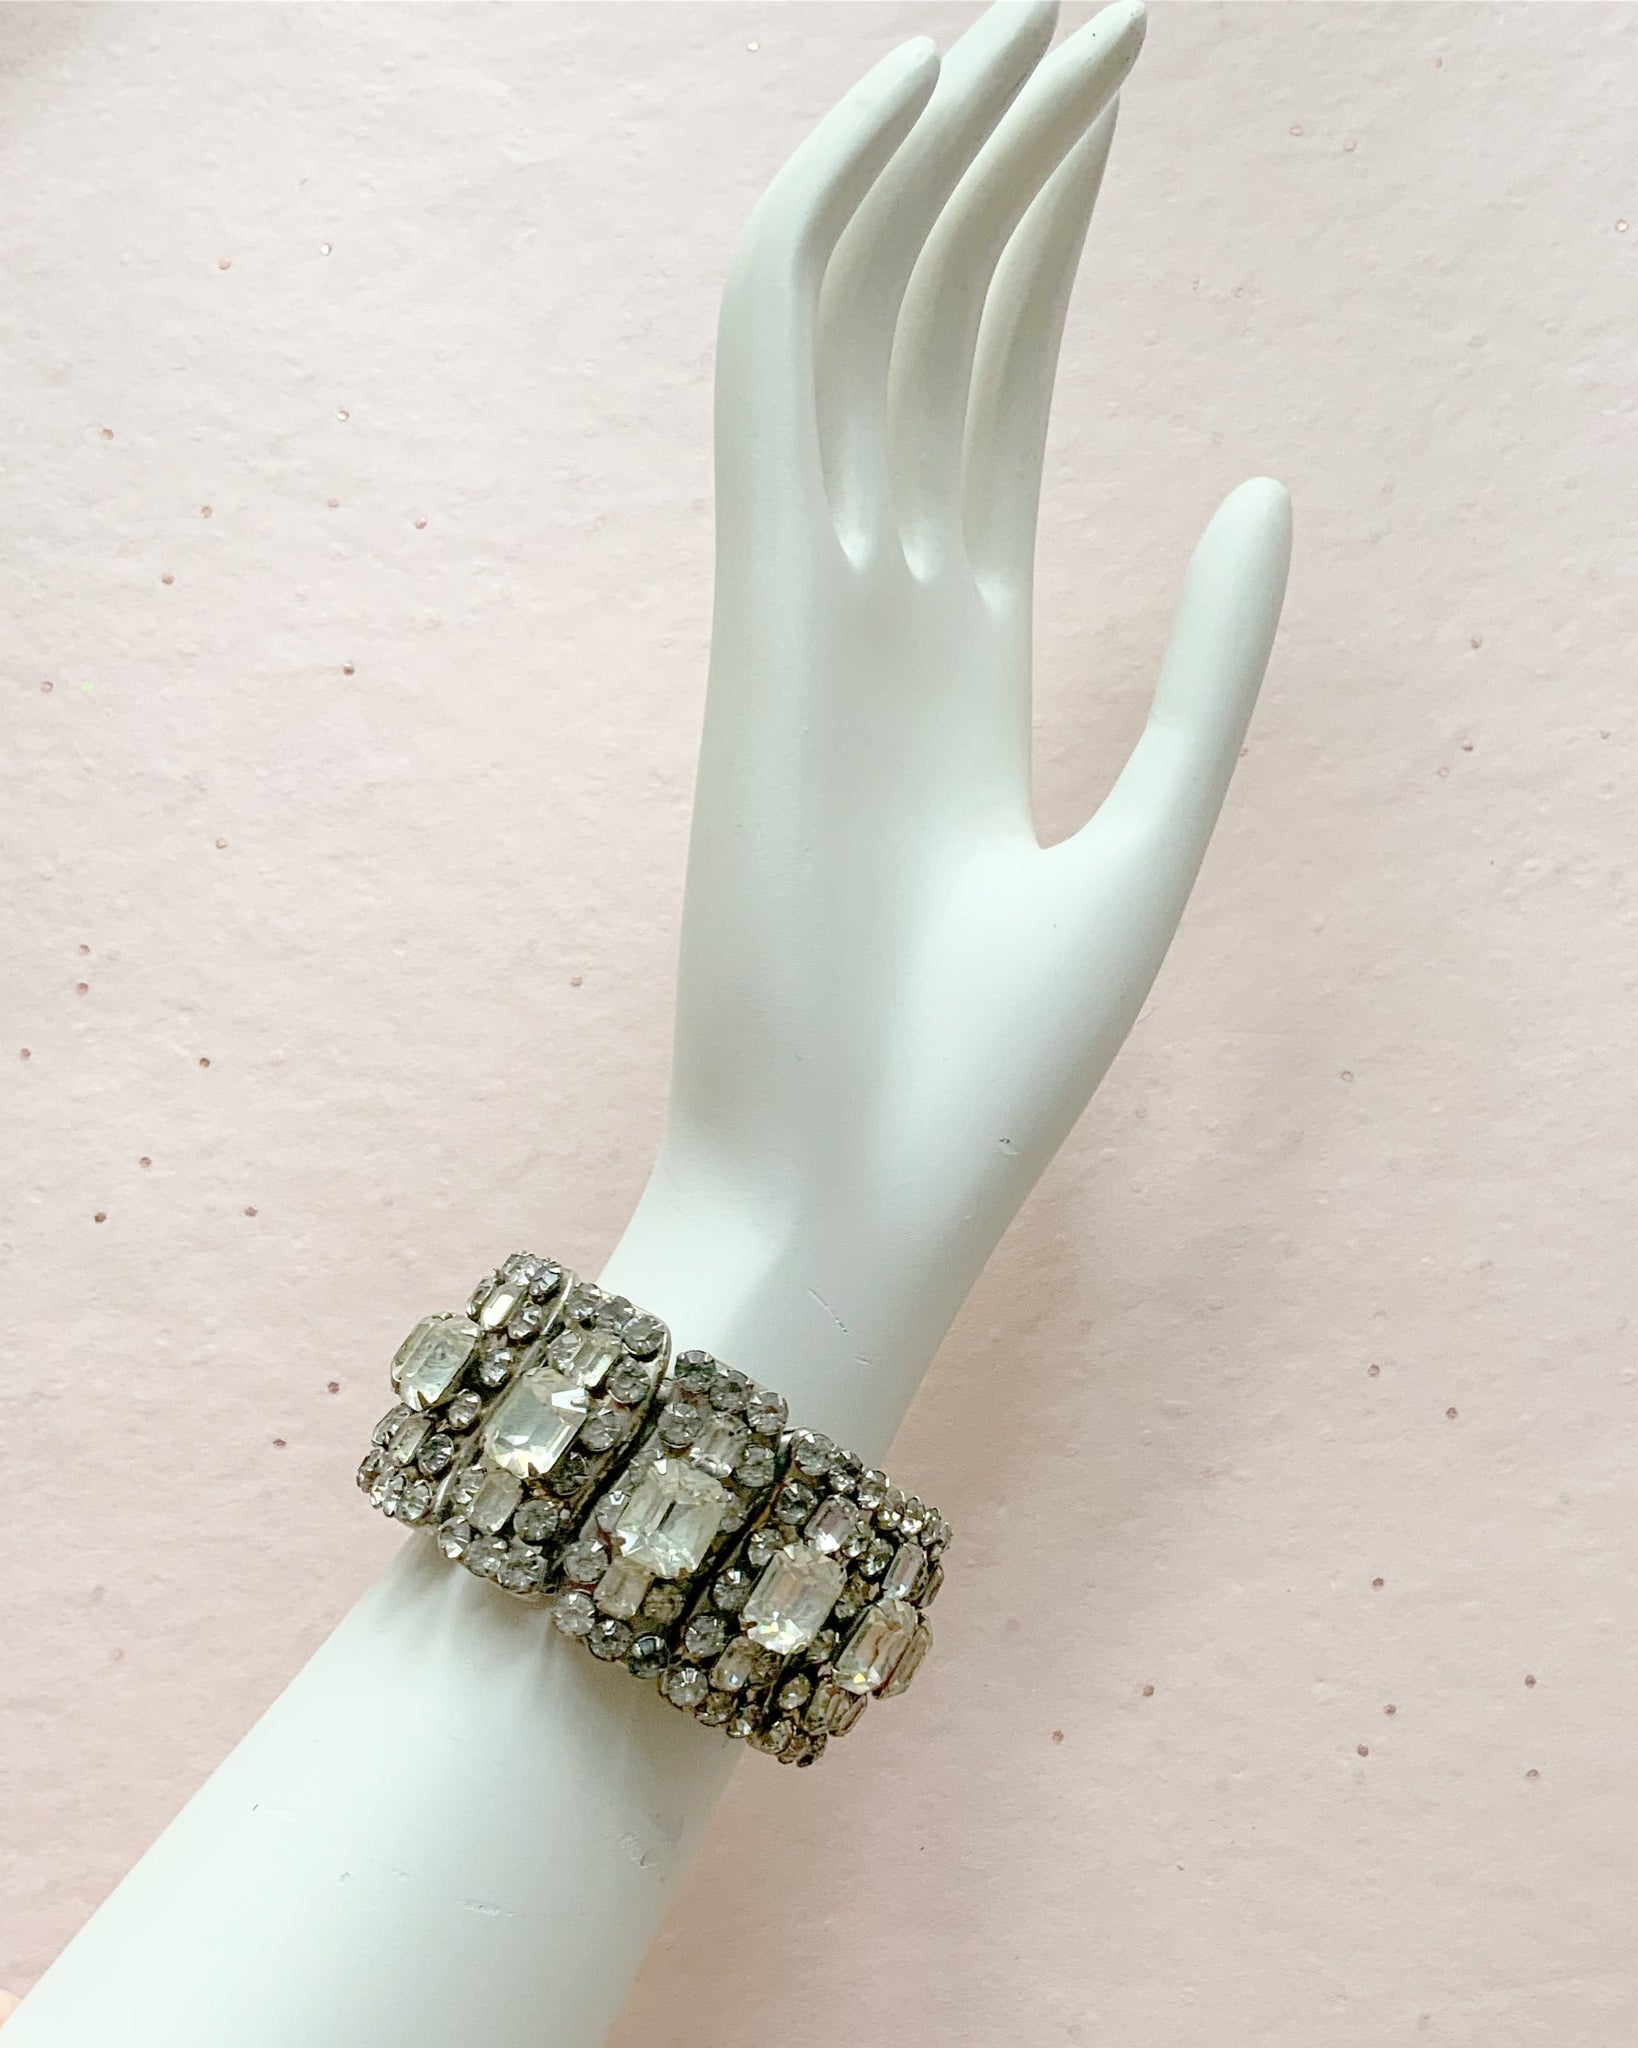 Huge 1950s Metal Prong Set Sparkling Crystal Rhinestones Expanding Statement Bracelet